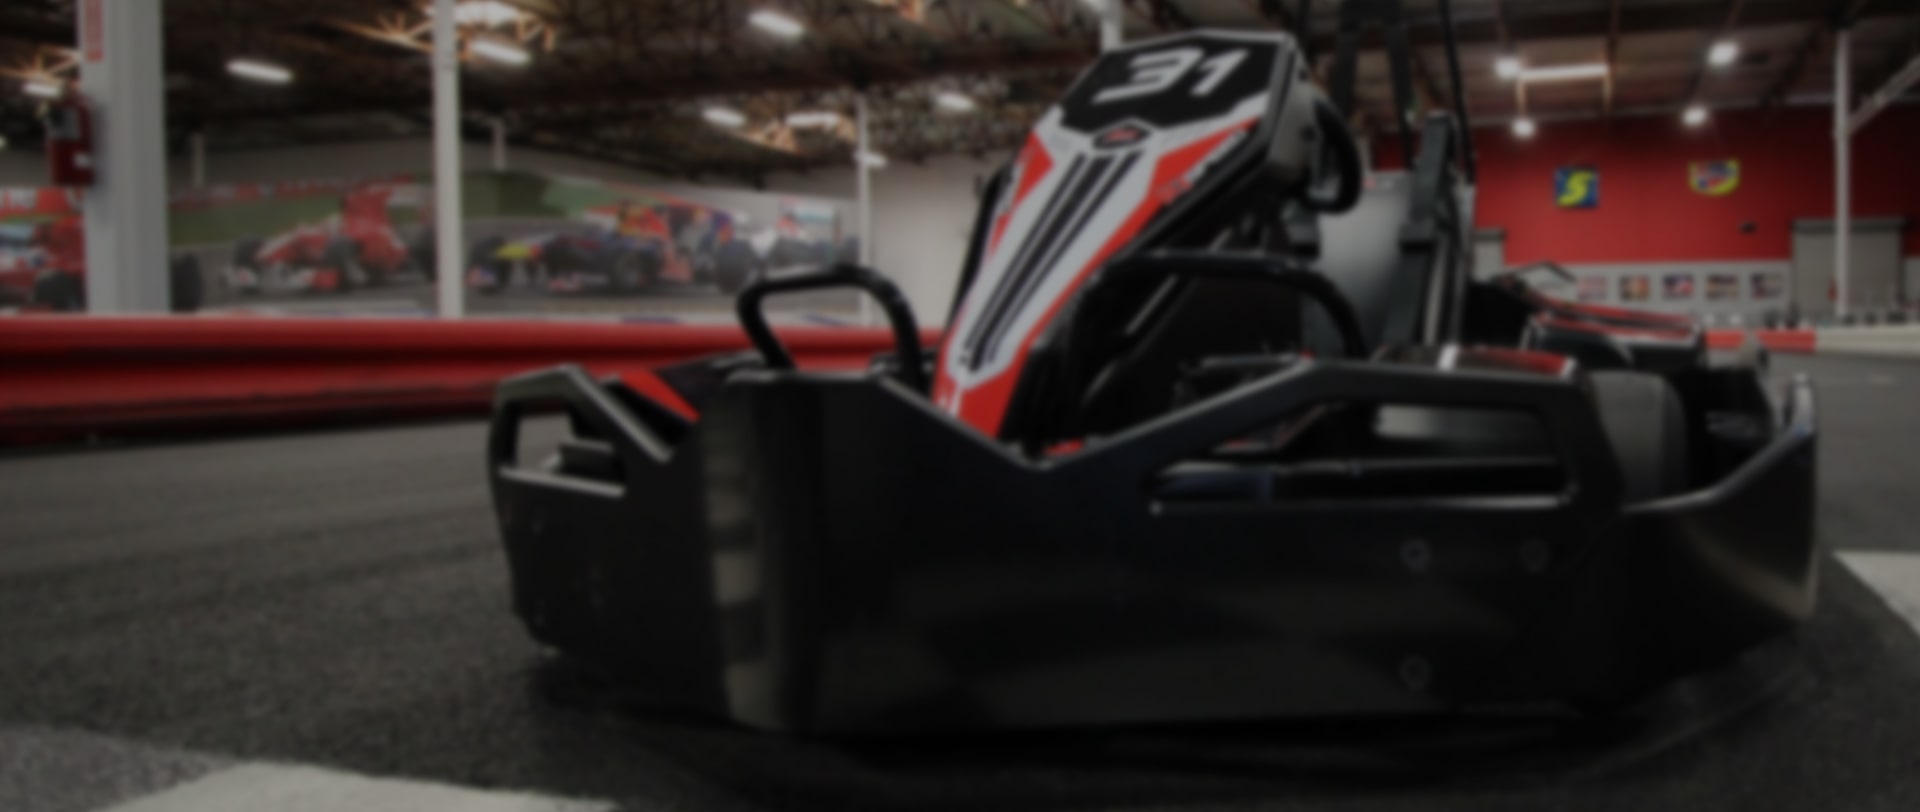 The OTL Superleggero Go Kart - For Commercial / Rental Use